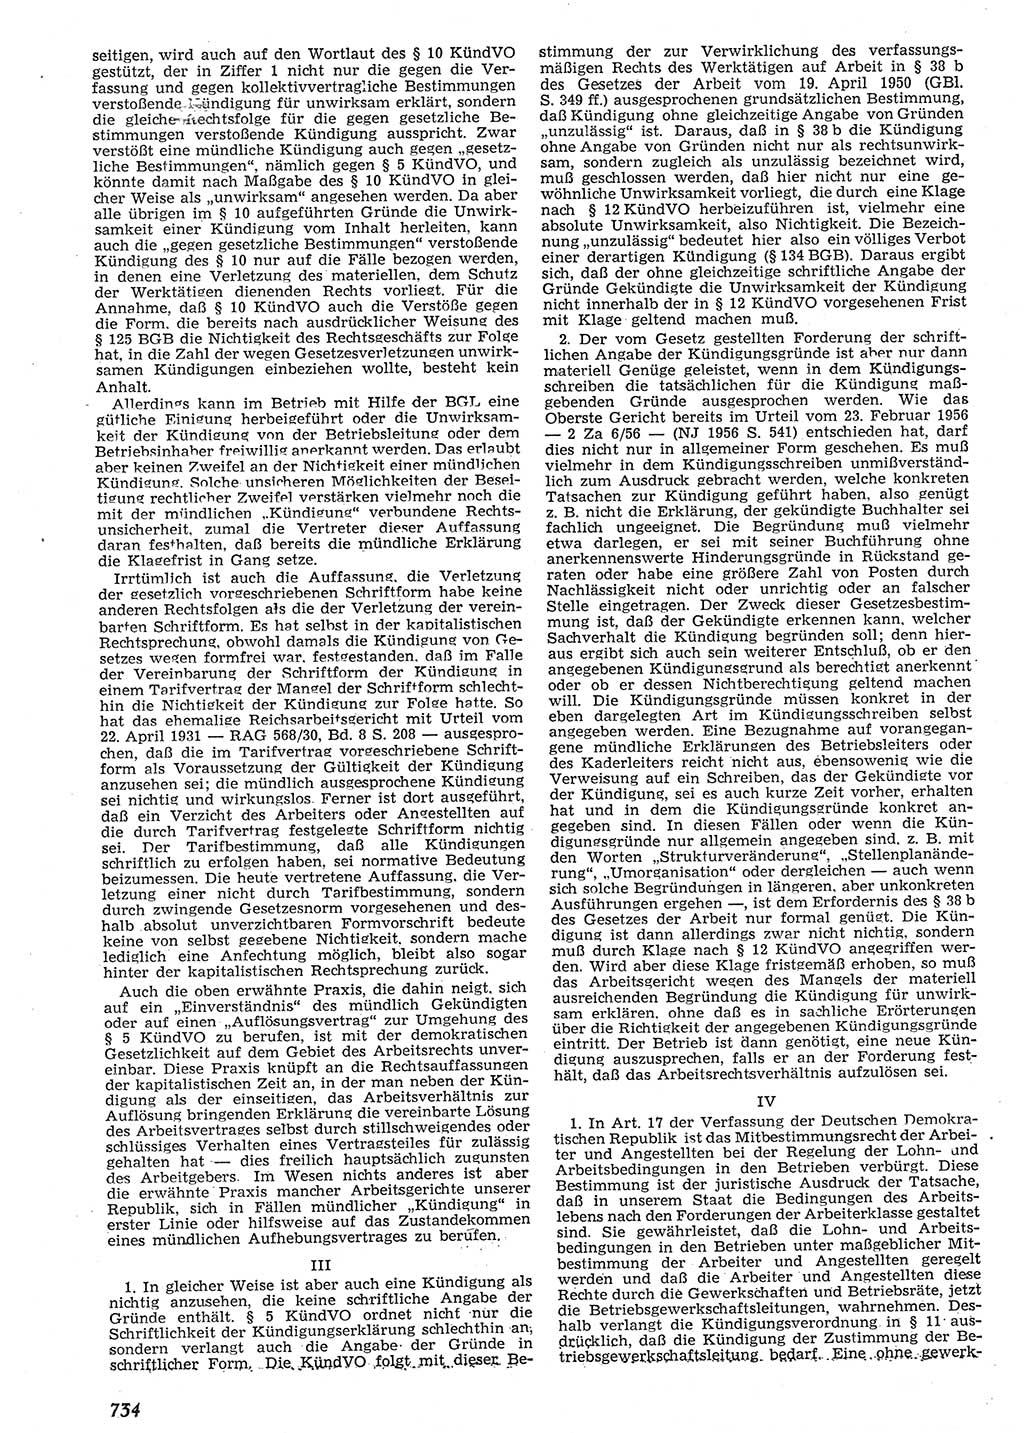 Neue Justiz (NJ), Zeitschrift für Recht und Rechtswissenschaft [Deutsche Demokratische Republik (DDR)], 10. Jahrgang 1956, Seite 734 (NJ DDR 1956, S. 734)